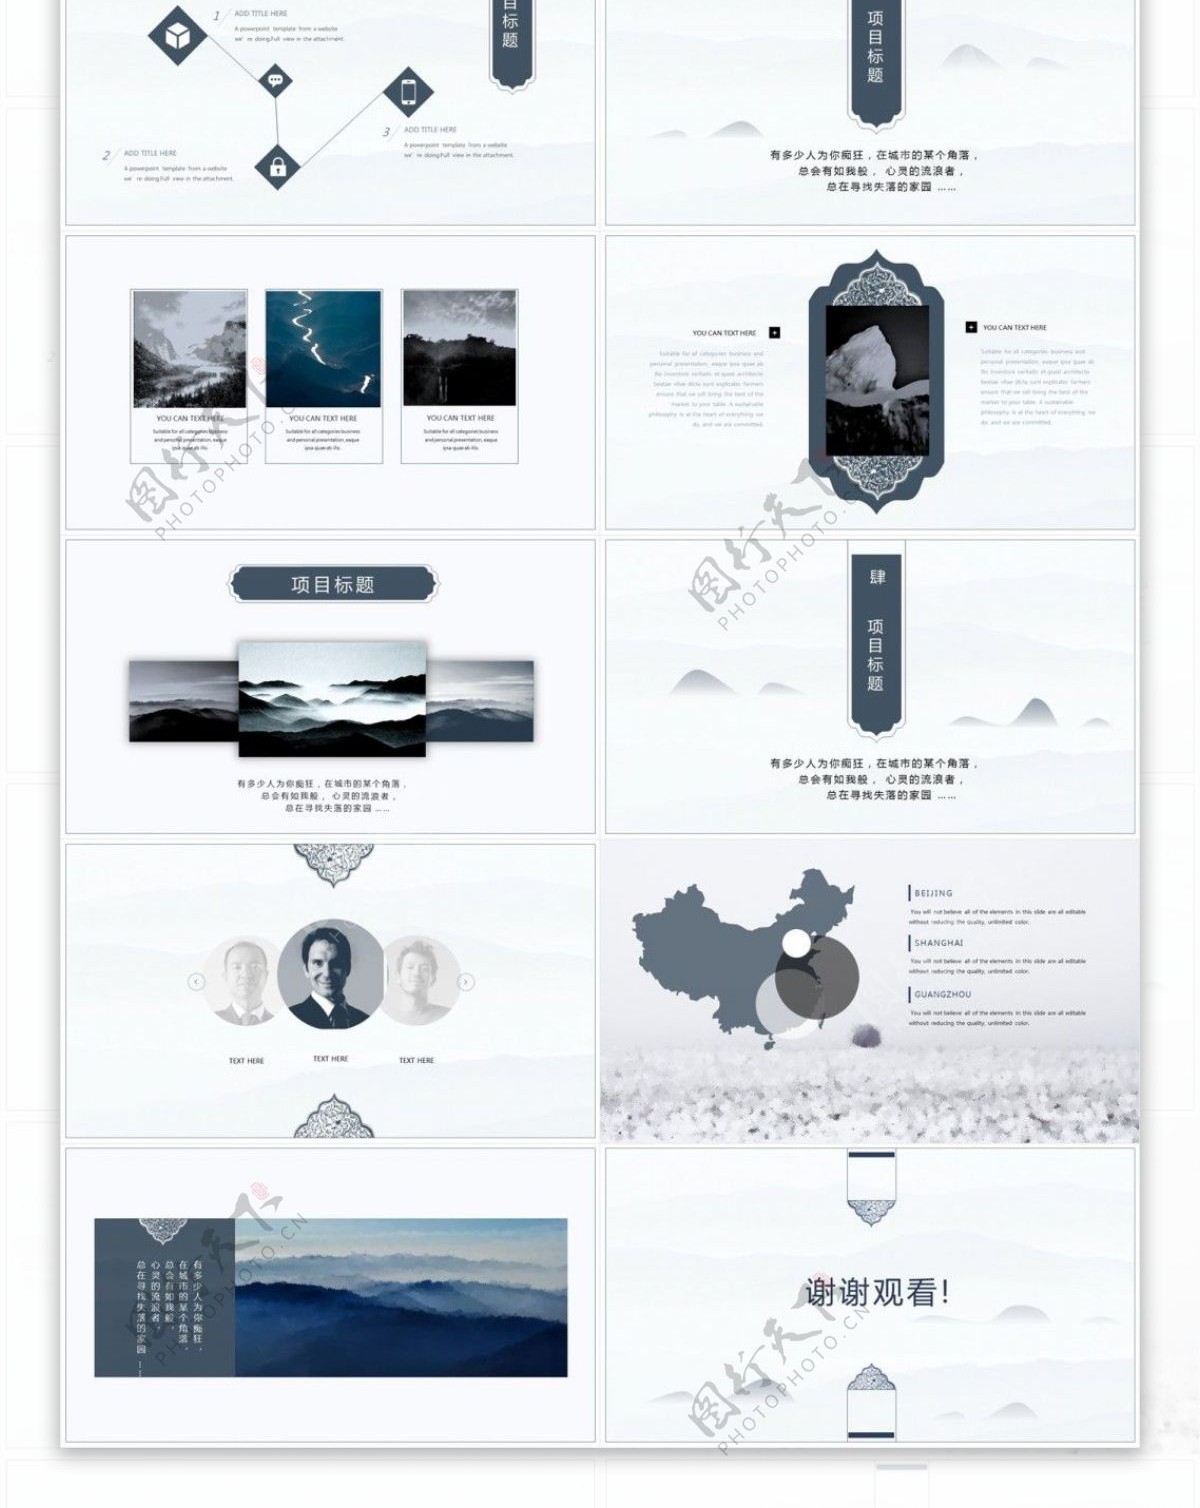 中国色冷色调品牌宣传介绍PPT模板